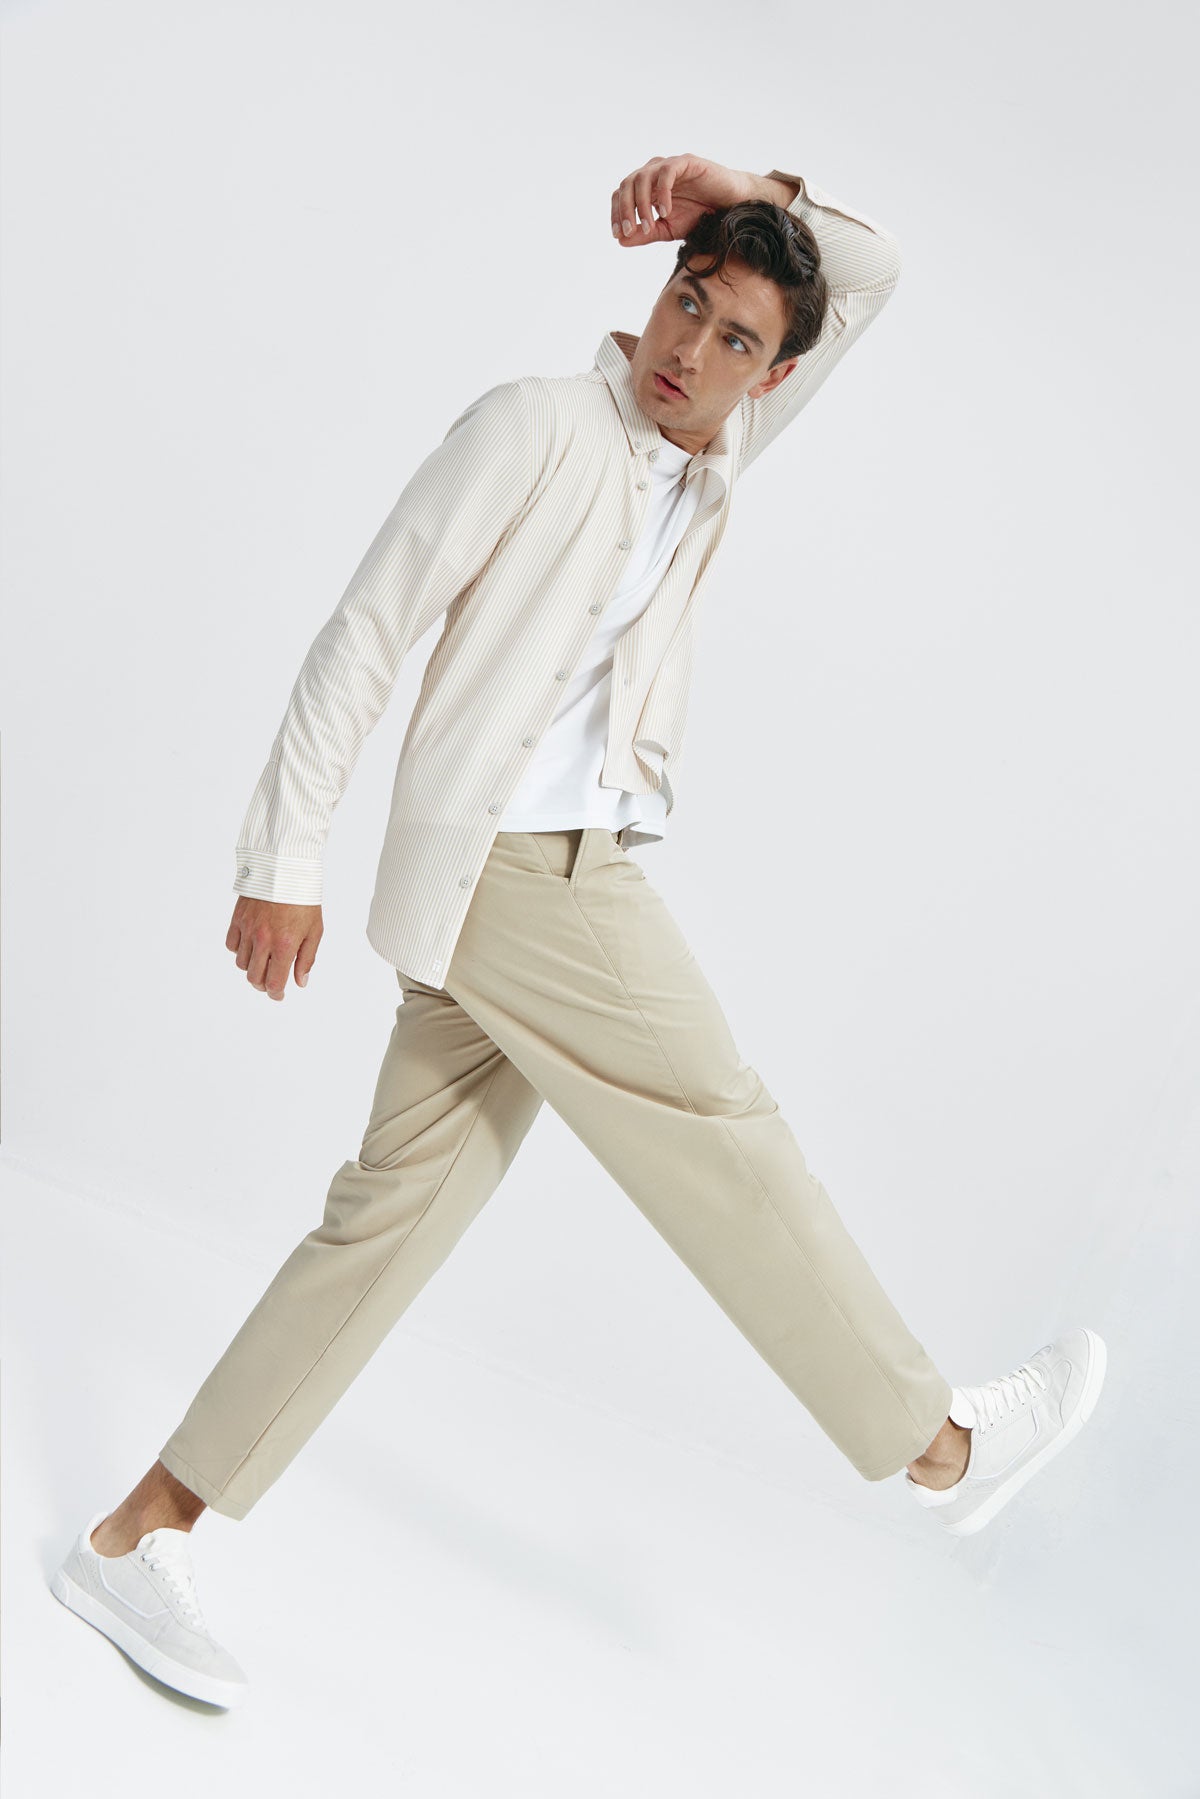 Pantalón de hombre que realza la figura y proporciona total libertad de movimiento. Foto de frente.